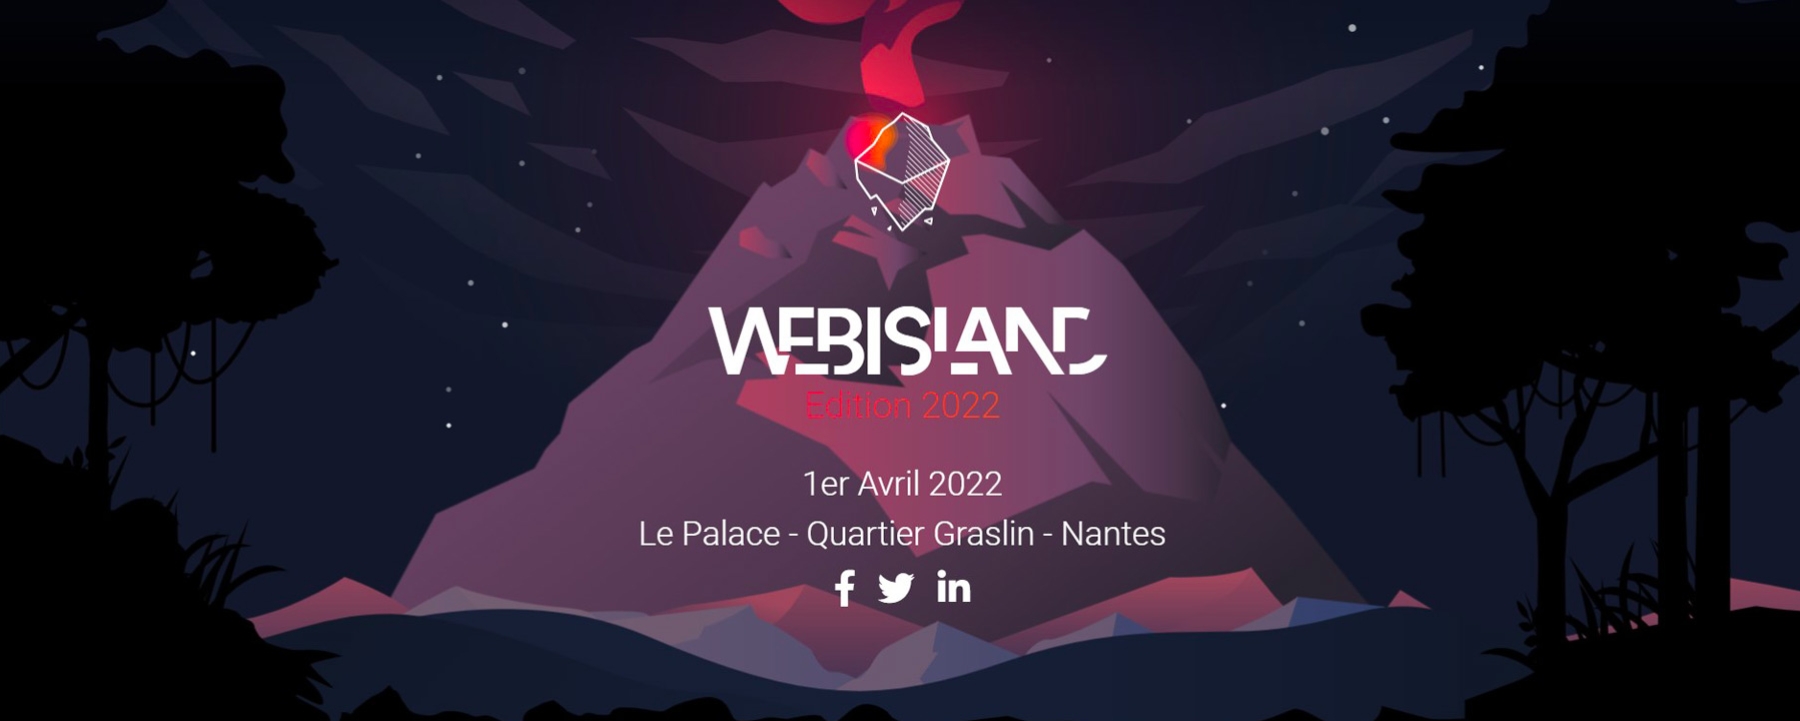 Webisland 2022